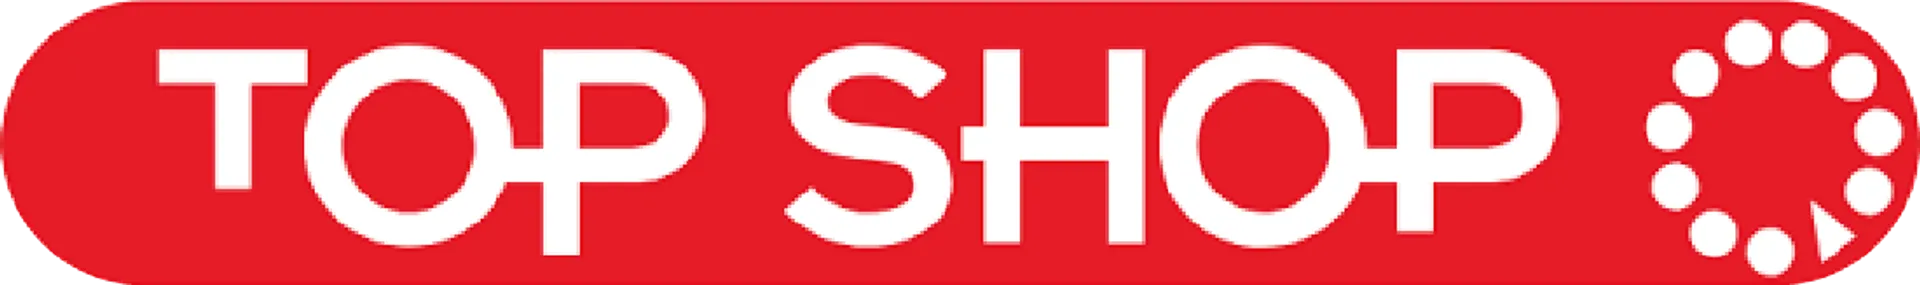 TOP SHOP logo